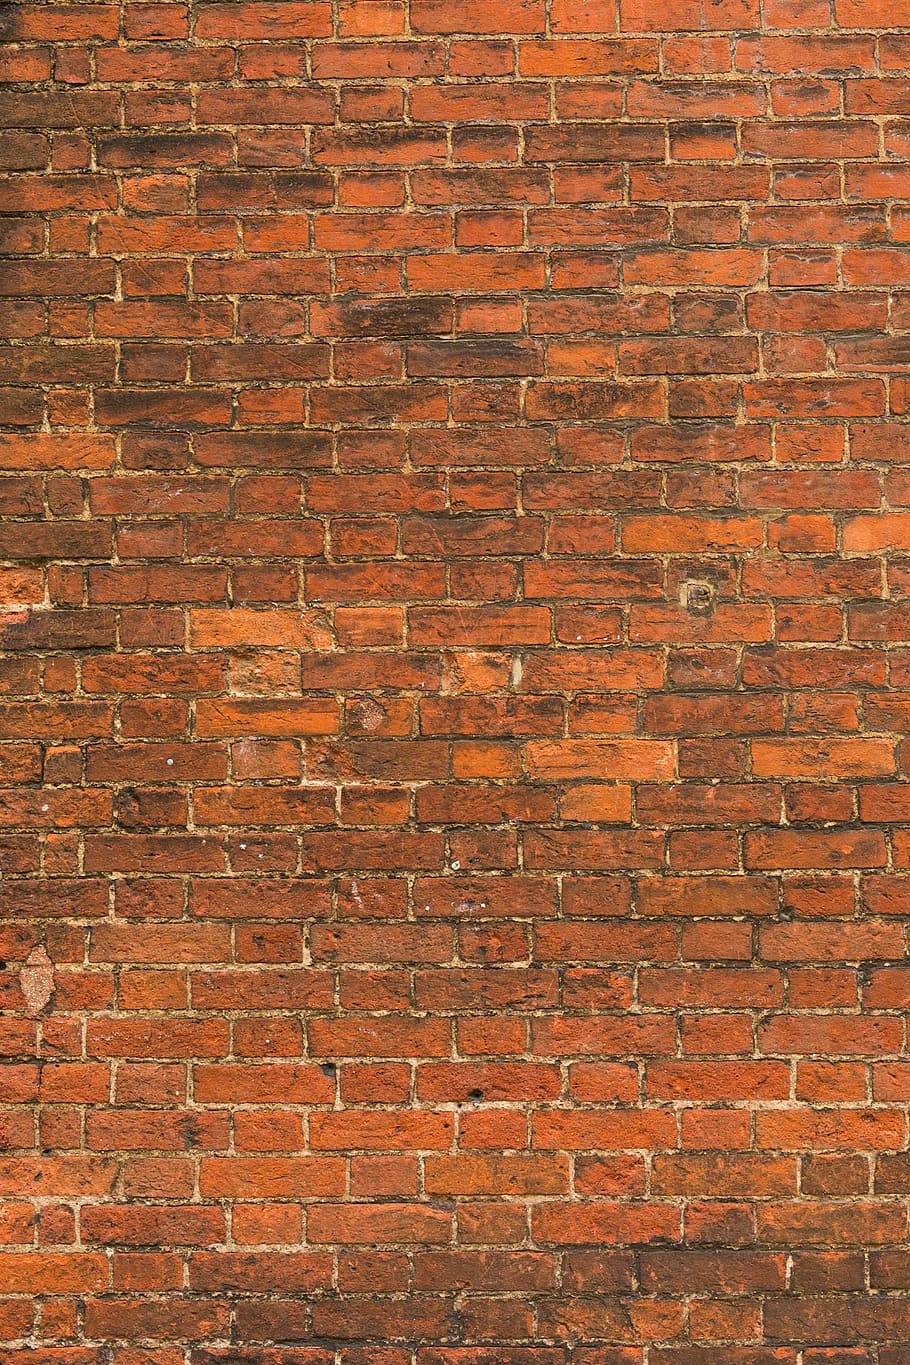 壁, レンガ, グラウト, パターン, テクスチャ, オレンジ, レンガの壁, 背景, 壁-建物の特徴, フルフレーム